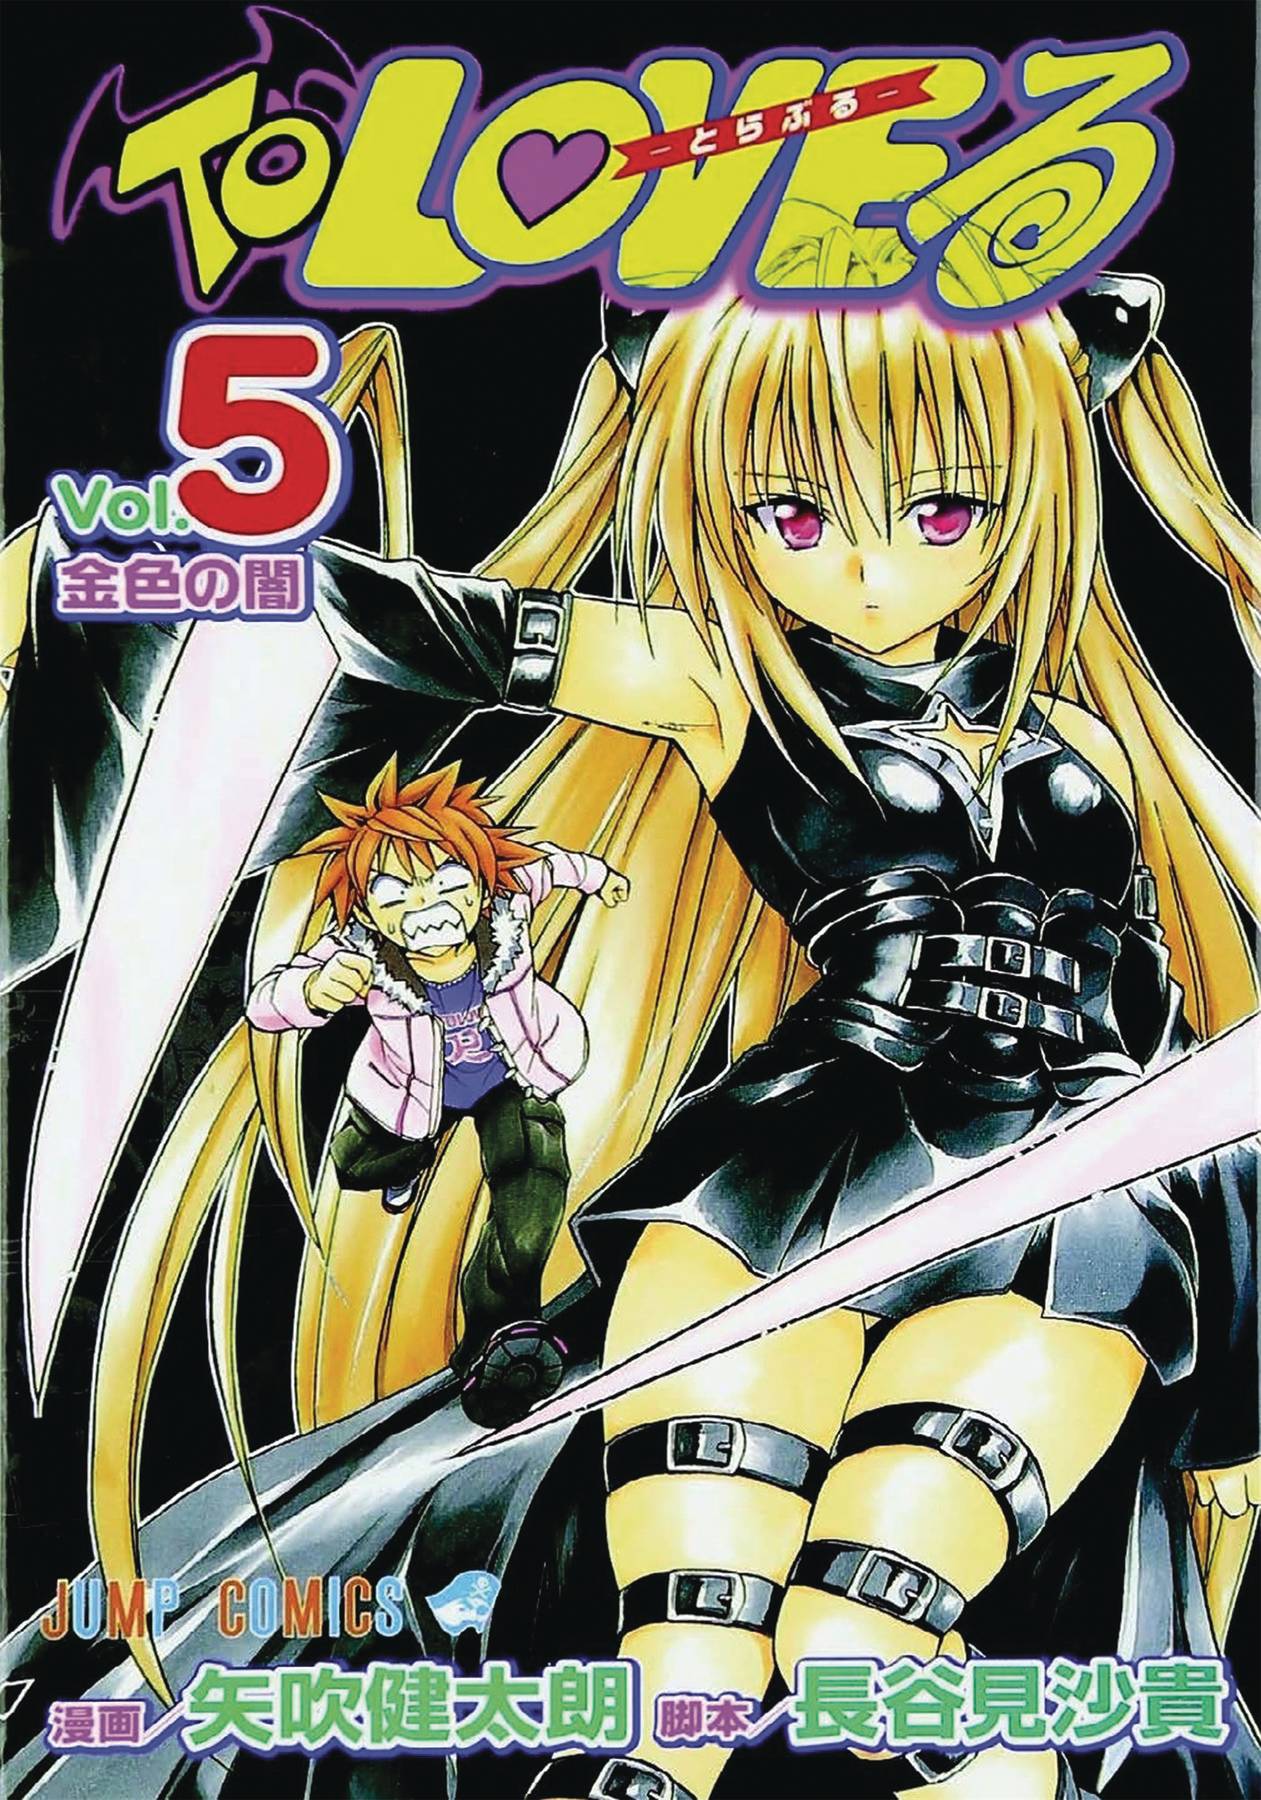 To Love Ru Manga Volume 5-06 Volume 3 (Mature)